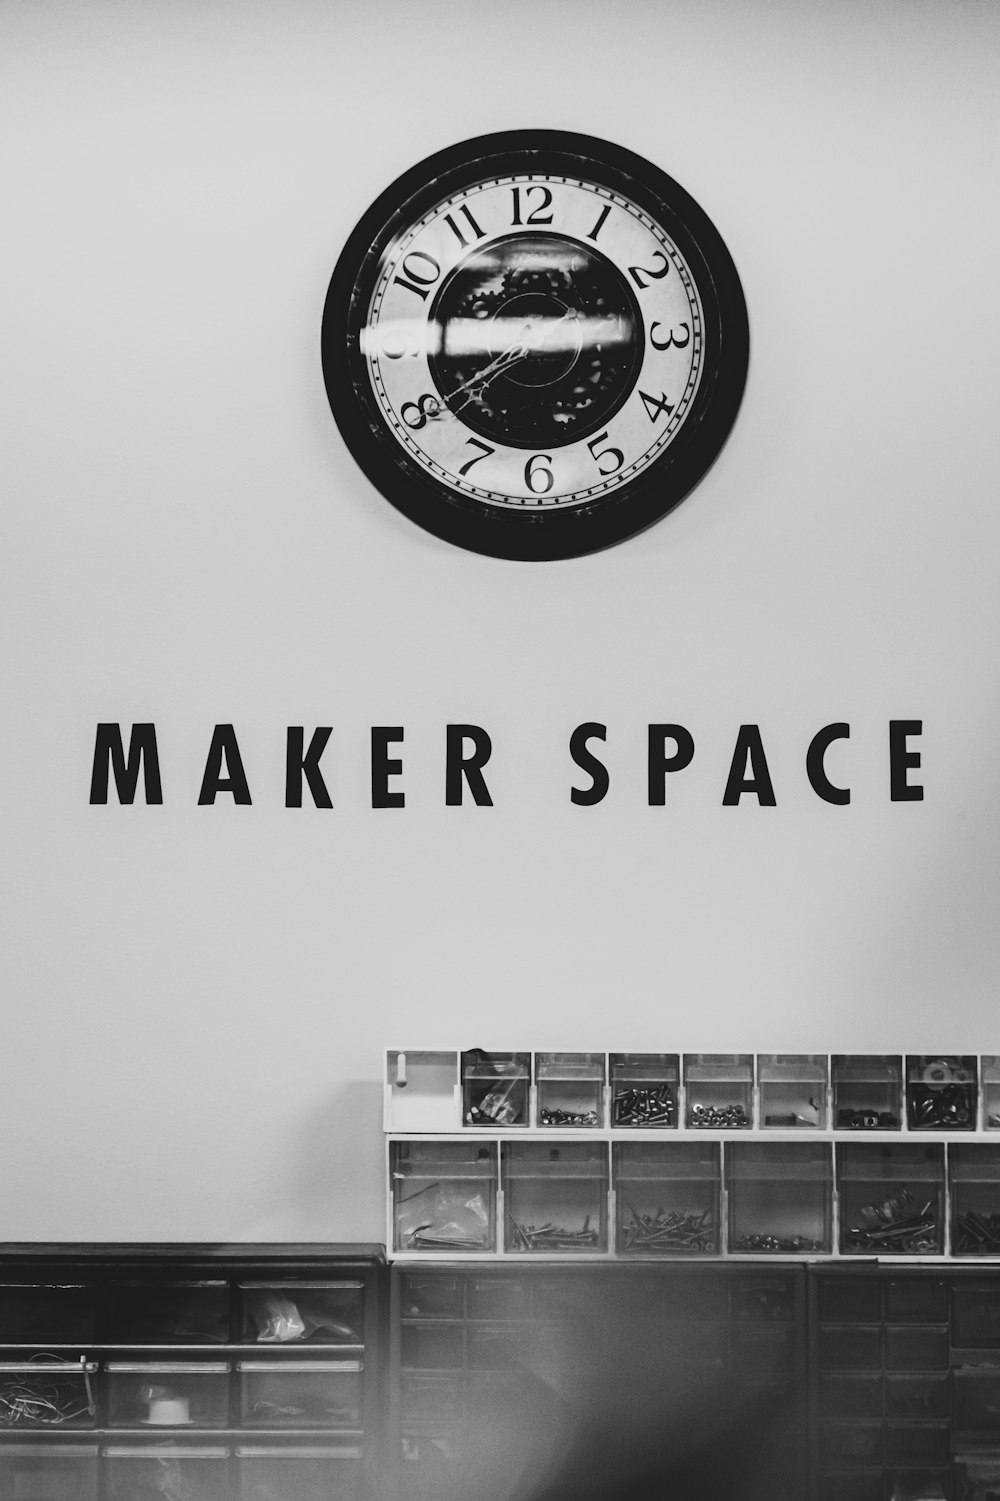 Maker Space signage